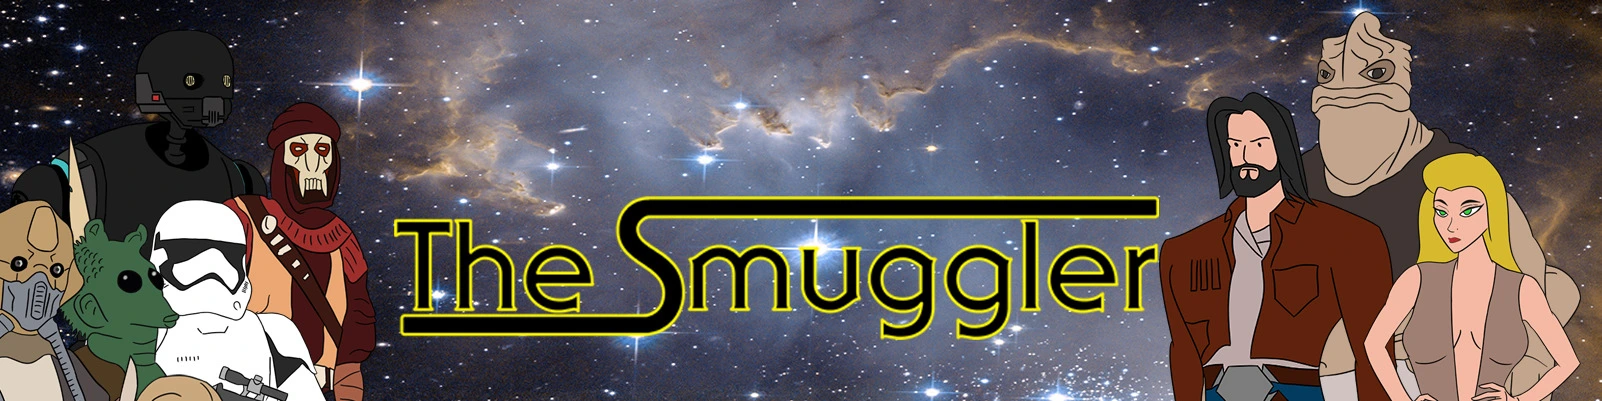 The Smuggler - A Star Wars Porn Parody [v0.1] main image